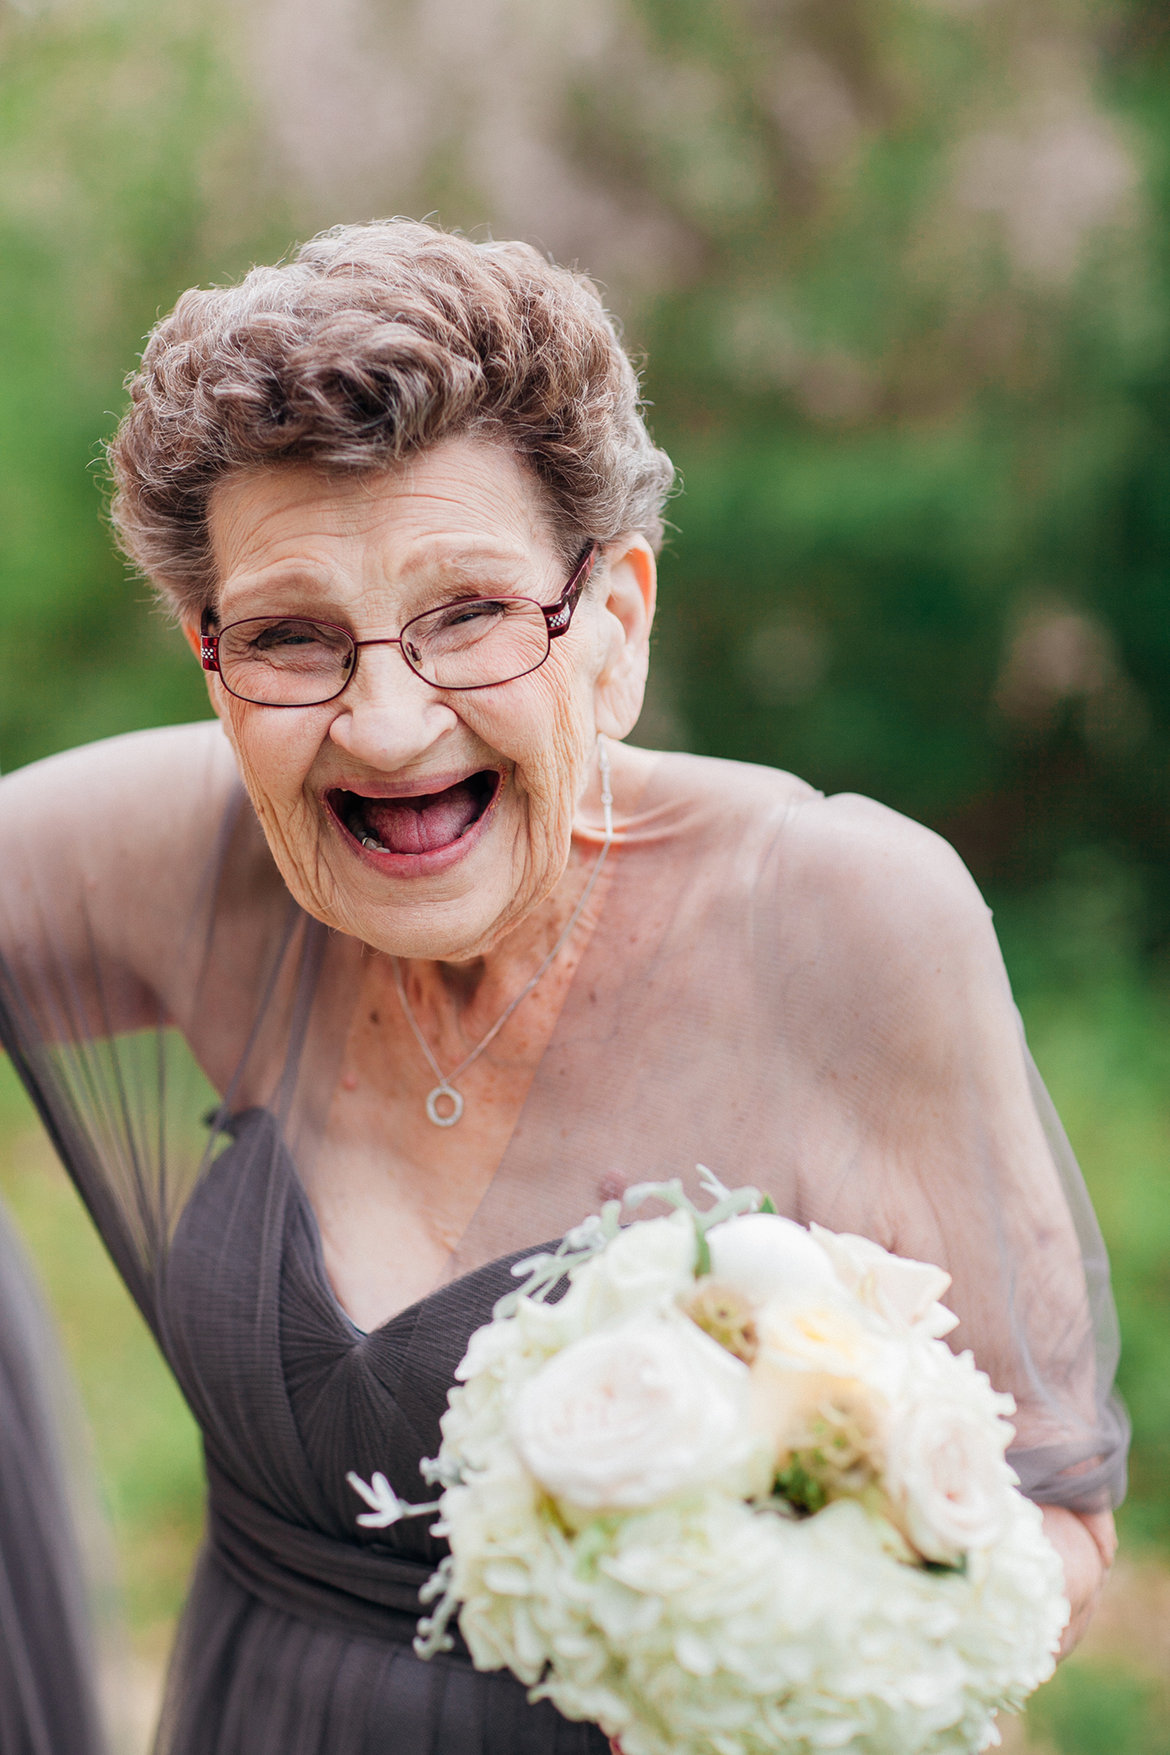 grandma as a bridesmaid